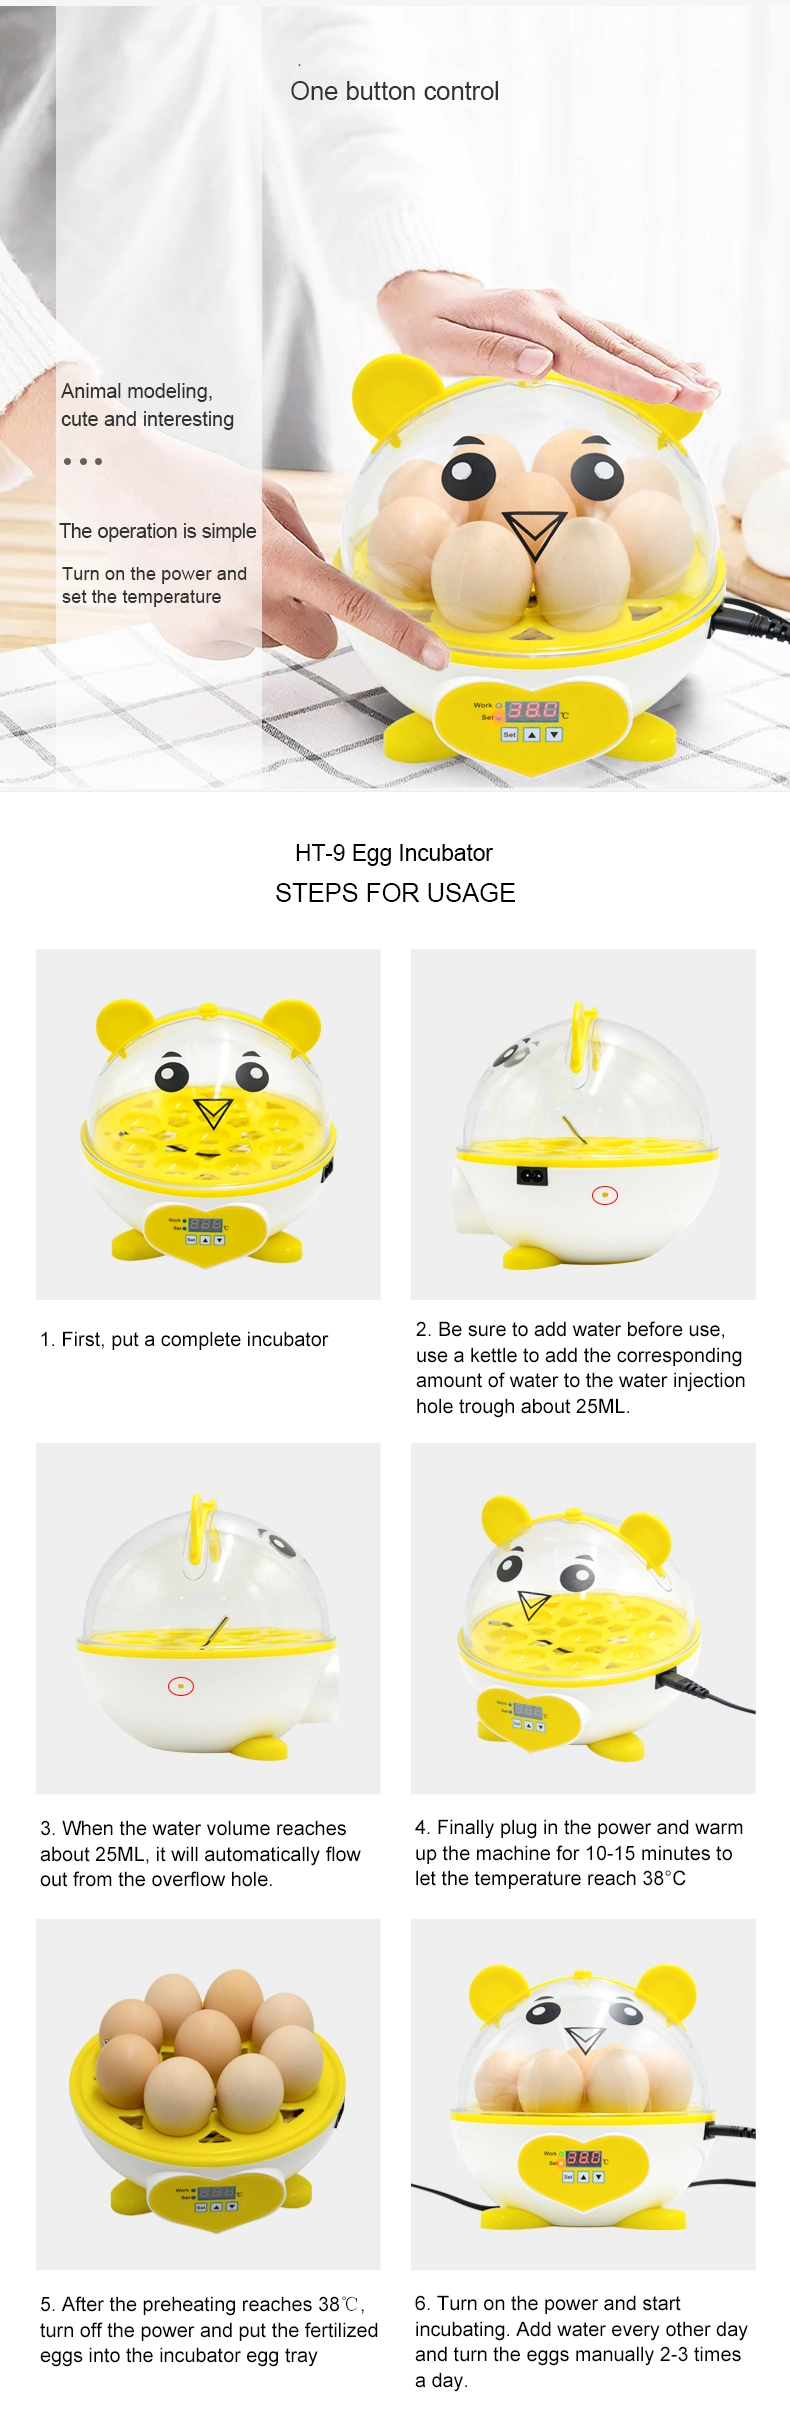 Best Selling Ht-9 Mini Egg Incubator Full Automatic Egg Incubator